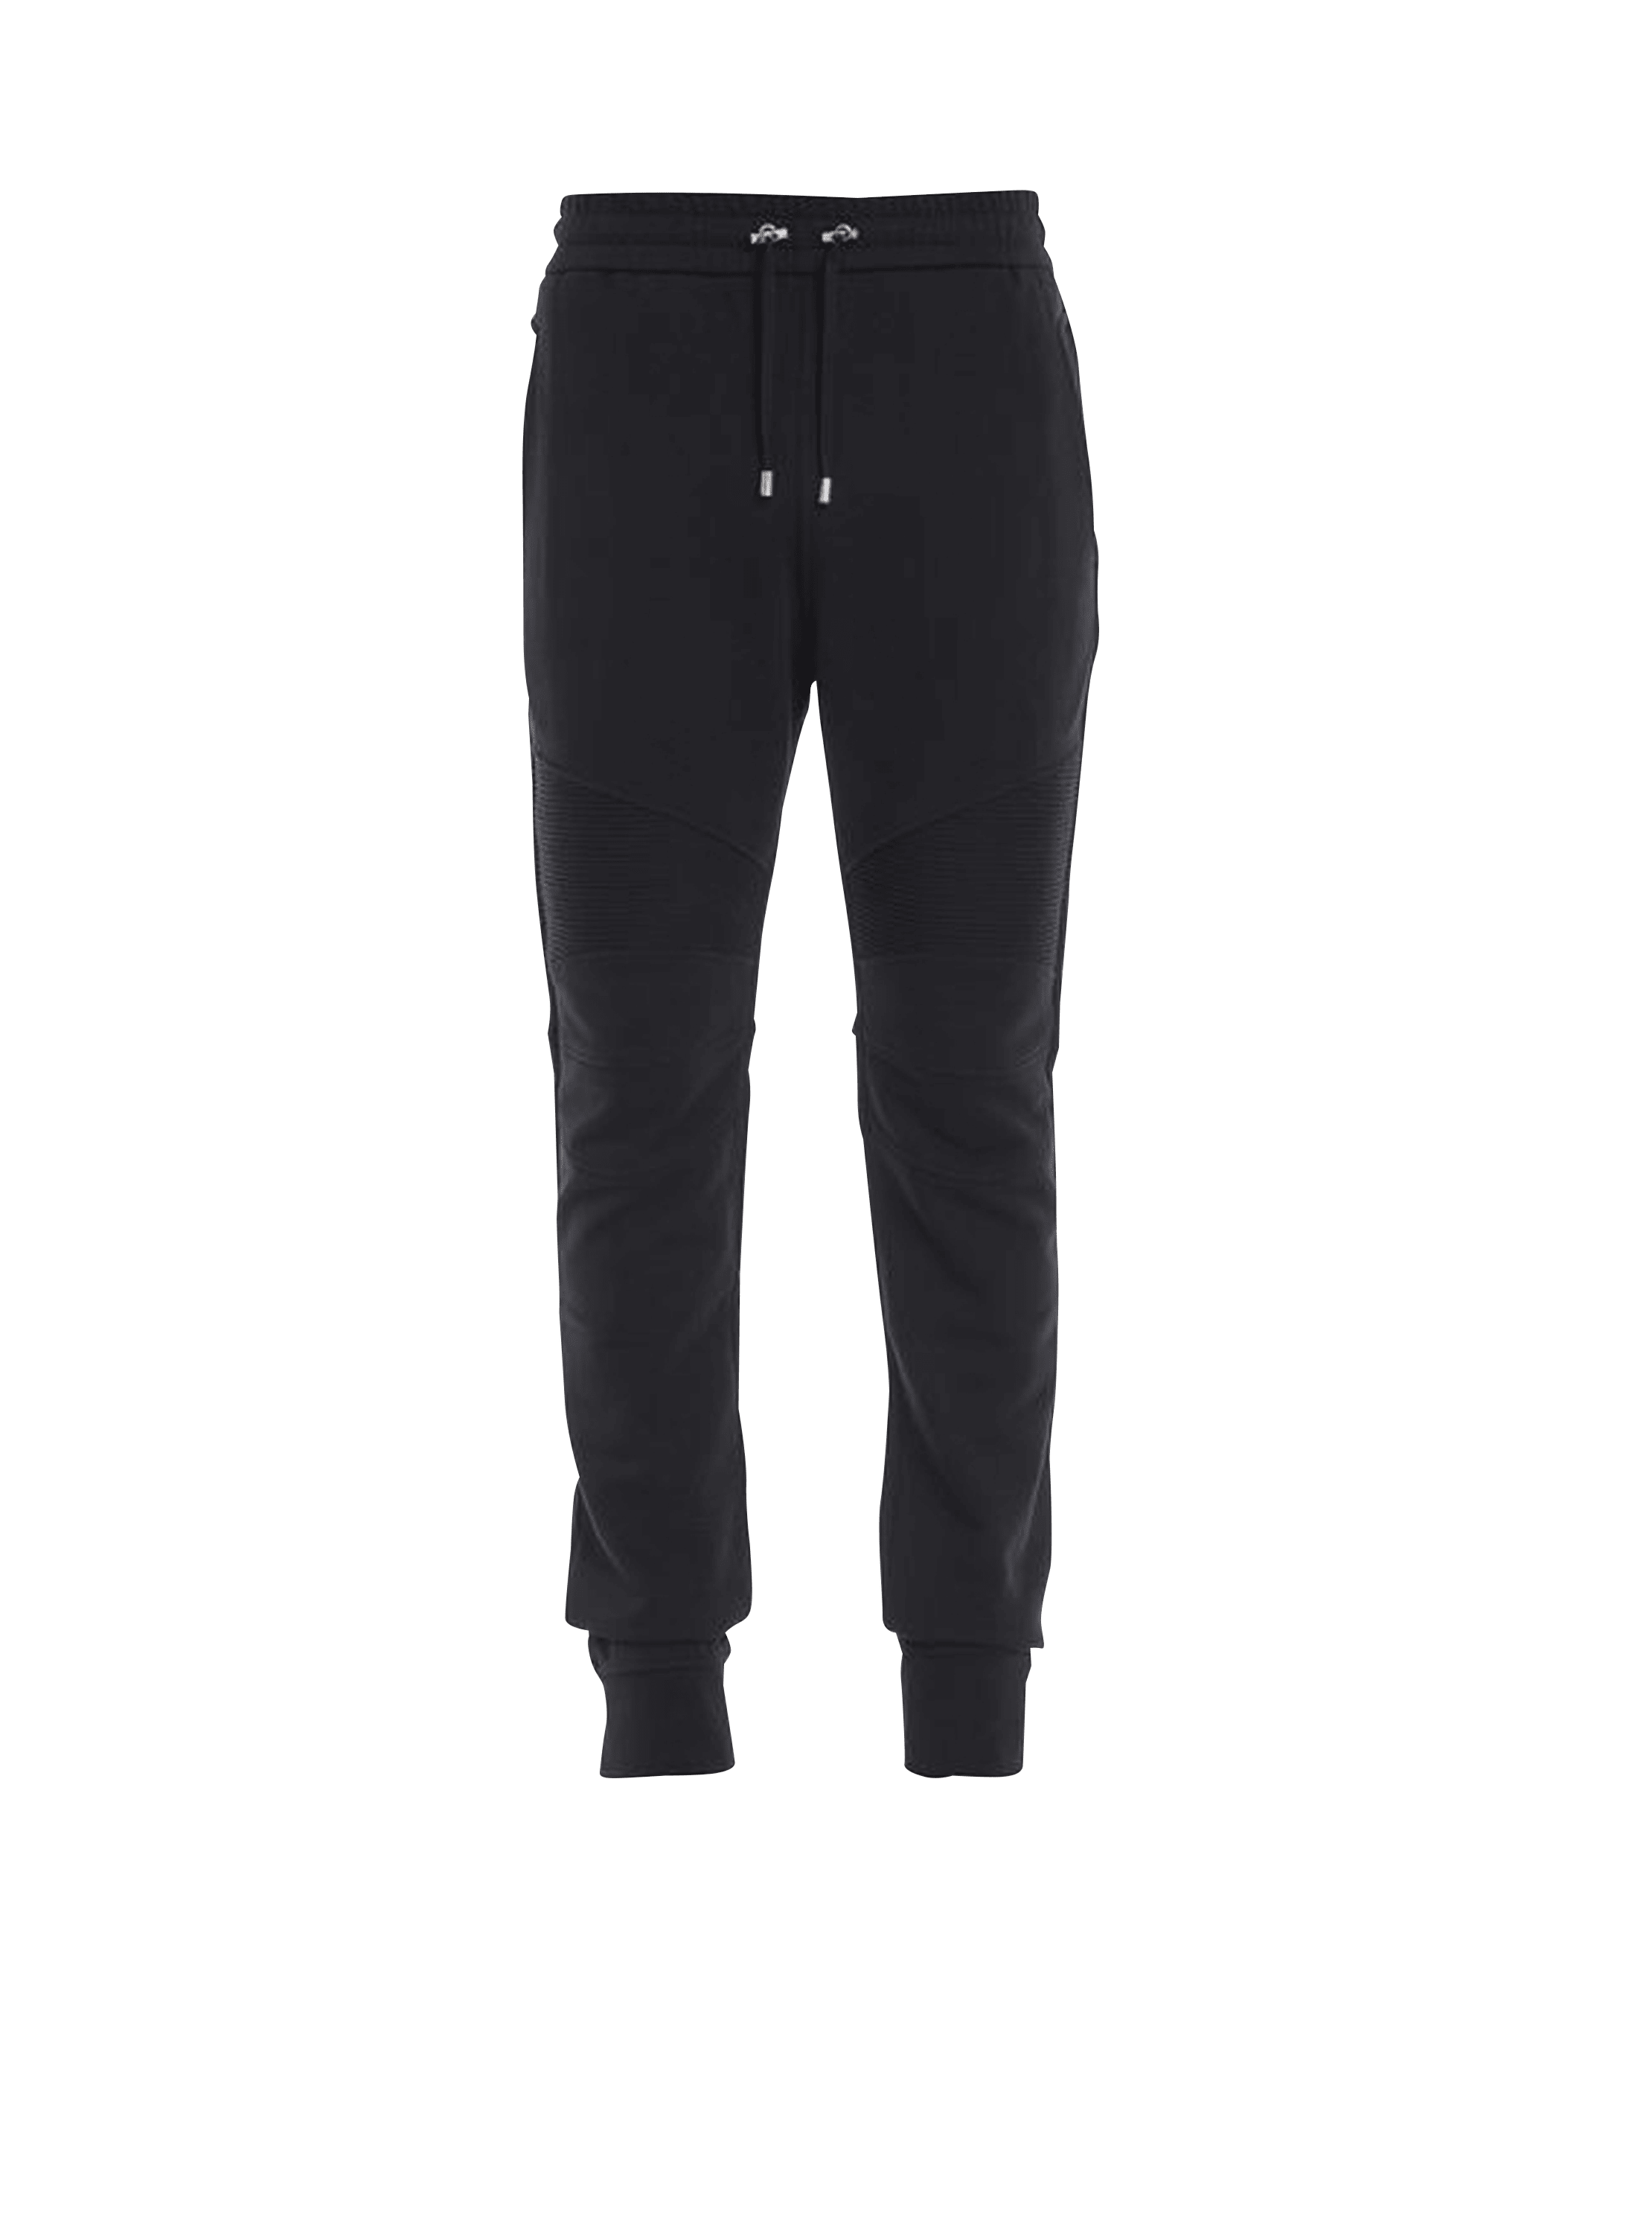 Pantalones de jogging de algodón con logotipo de Balmain estampado, negro, hi-res